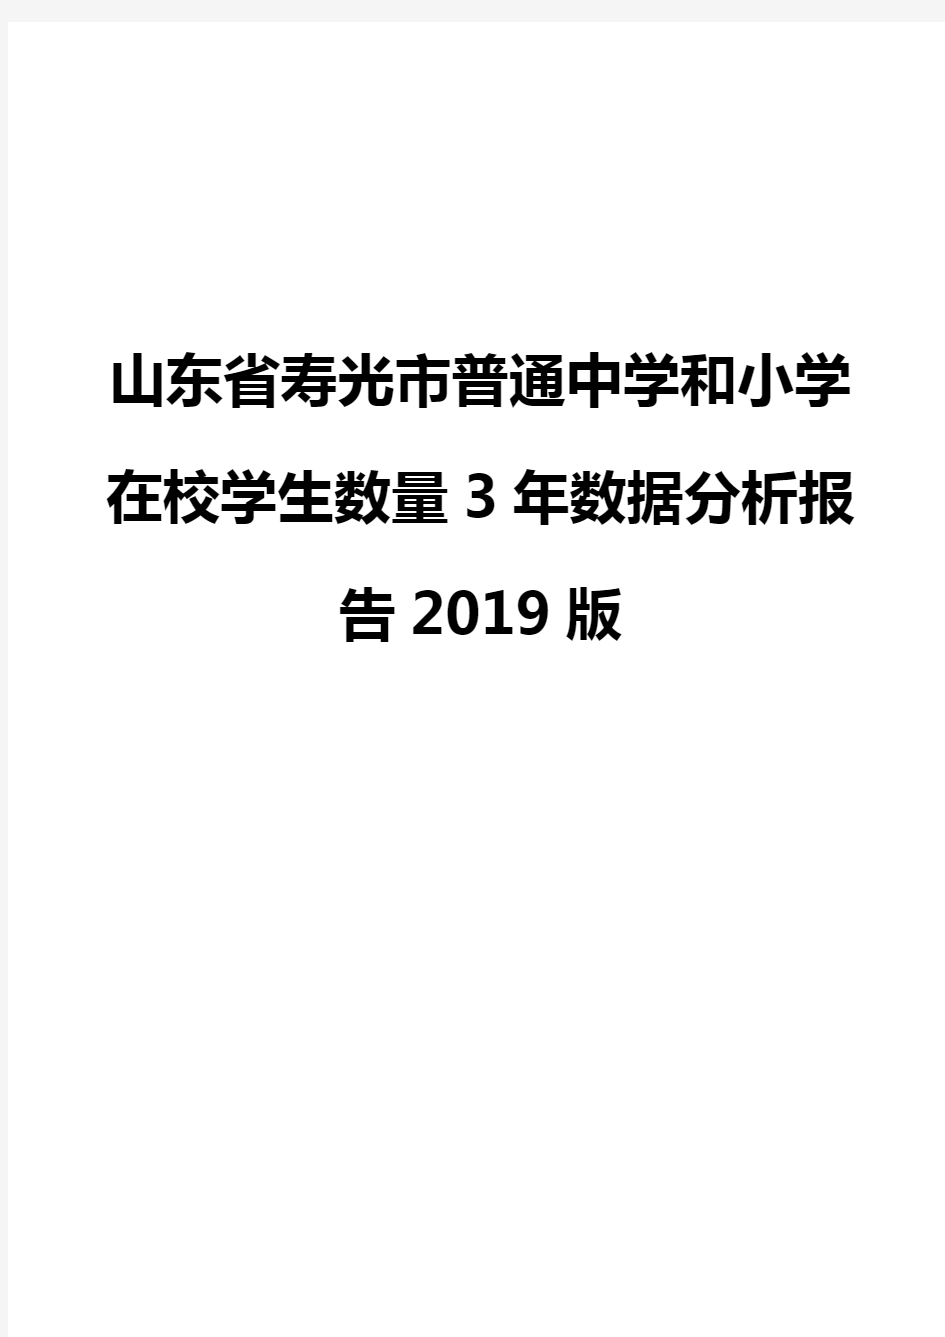 山东省寿光市普通中学和小学在校学生数量3年数据分析报告2019版